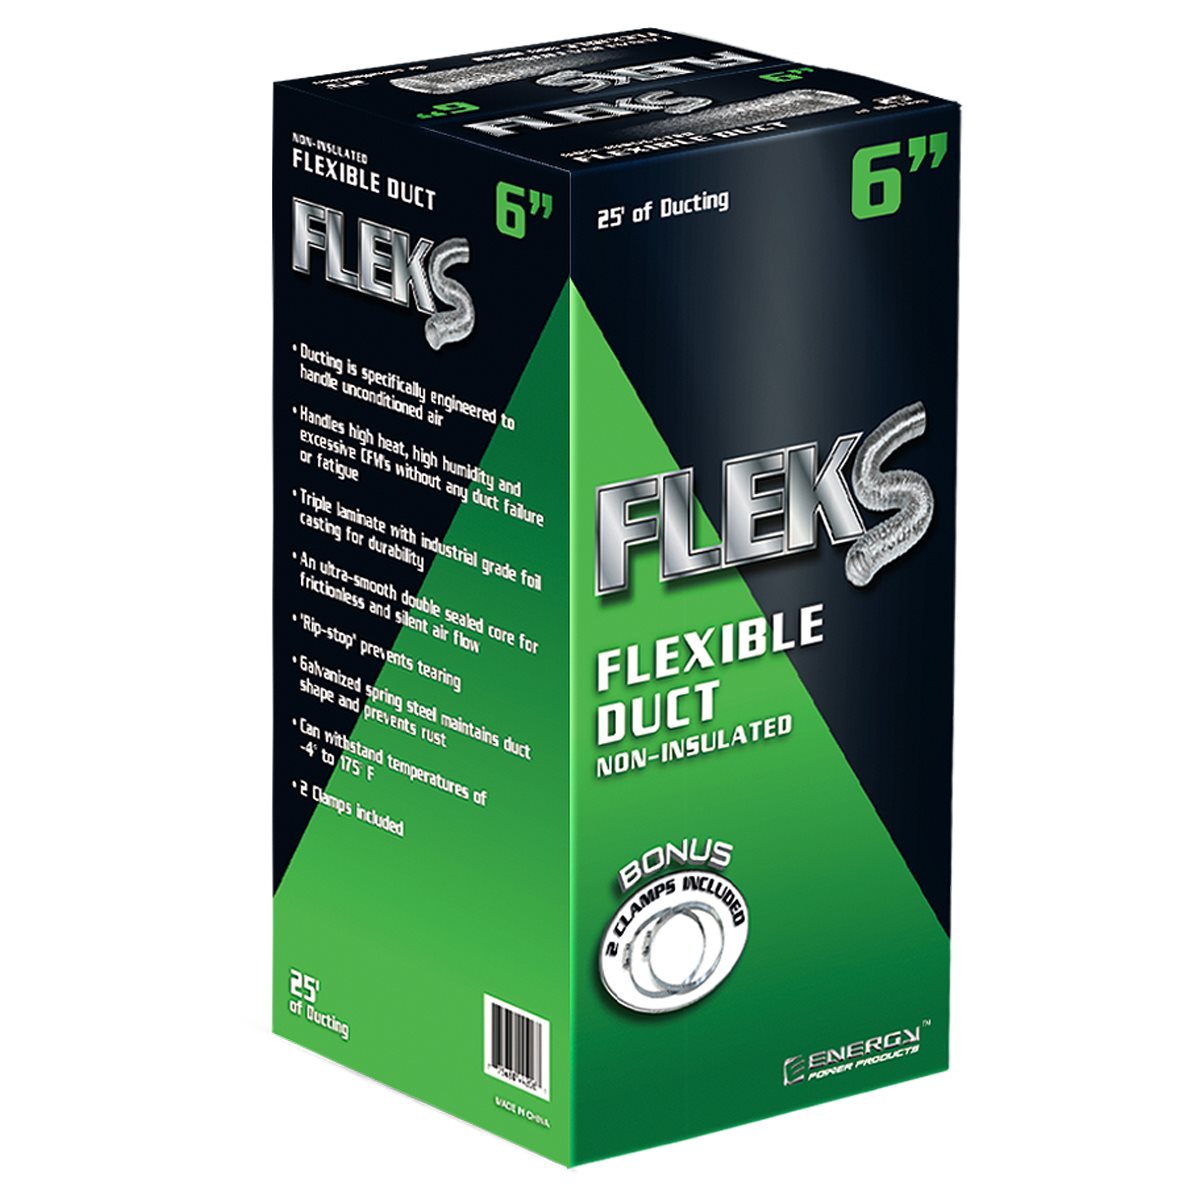 Fleks Ducting (Special Order)